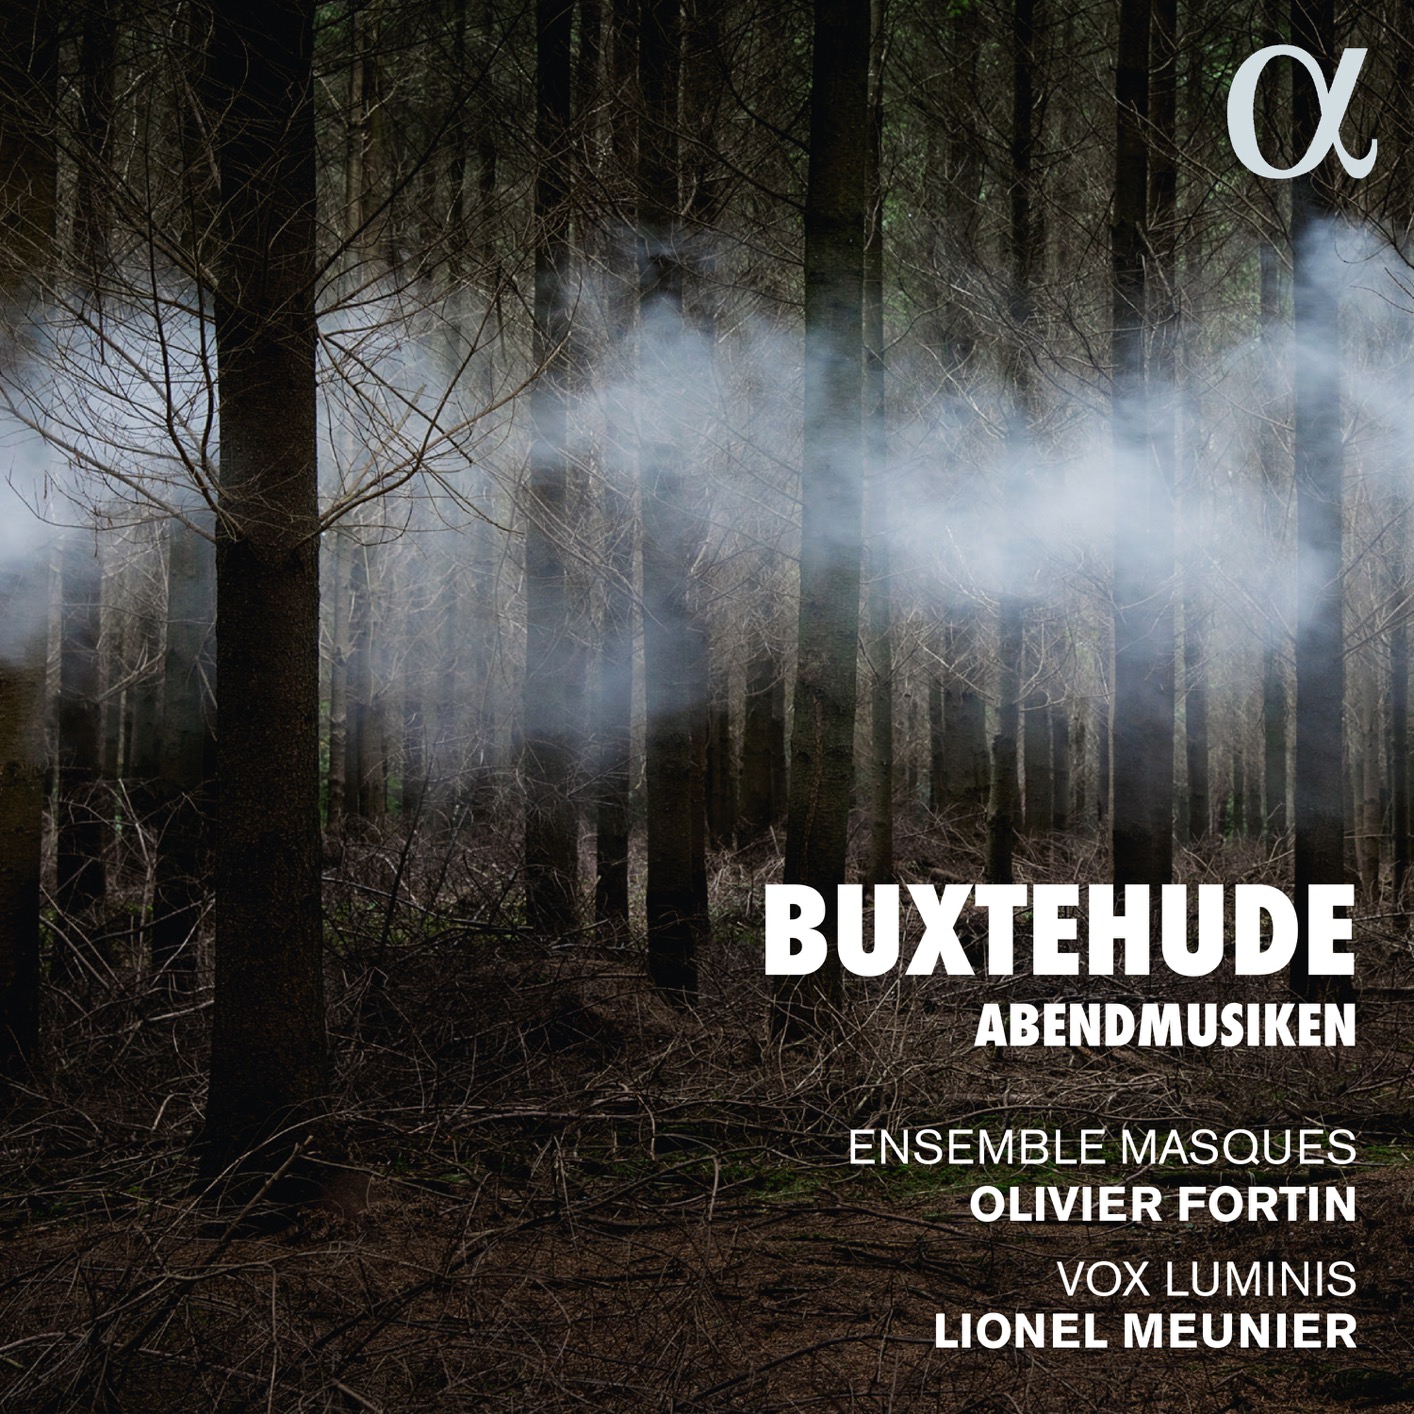 Lionel Meunier - Buxtehude - Abendmusiken 24-96